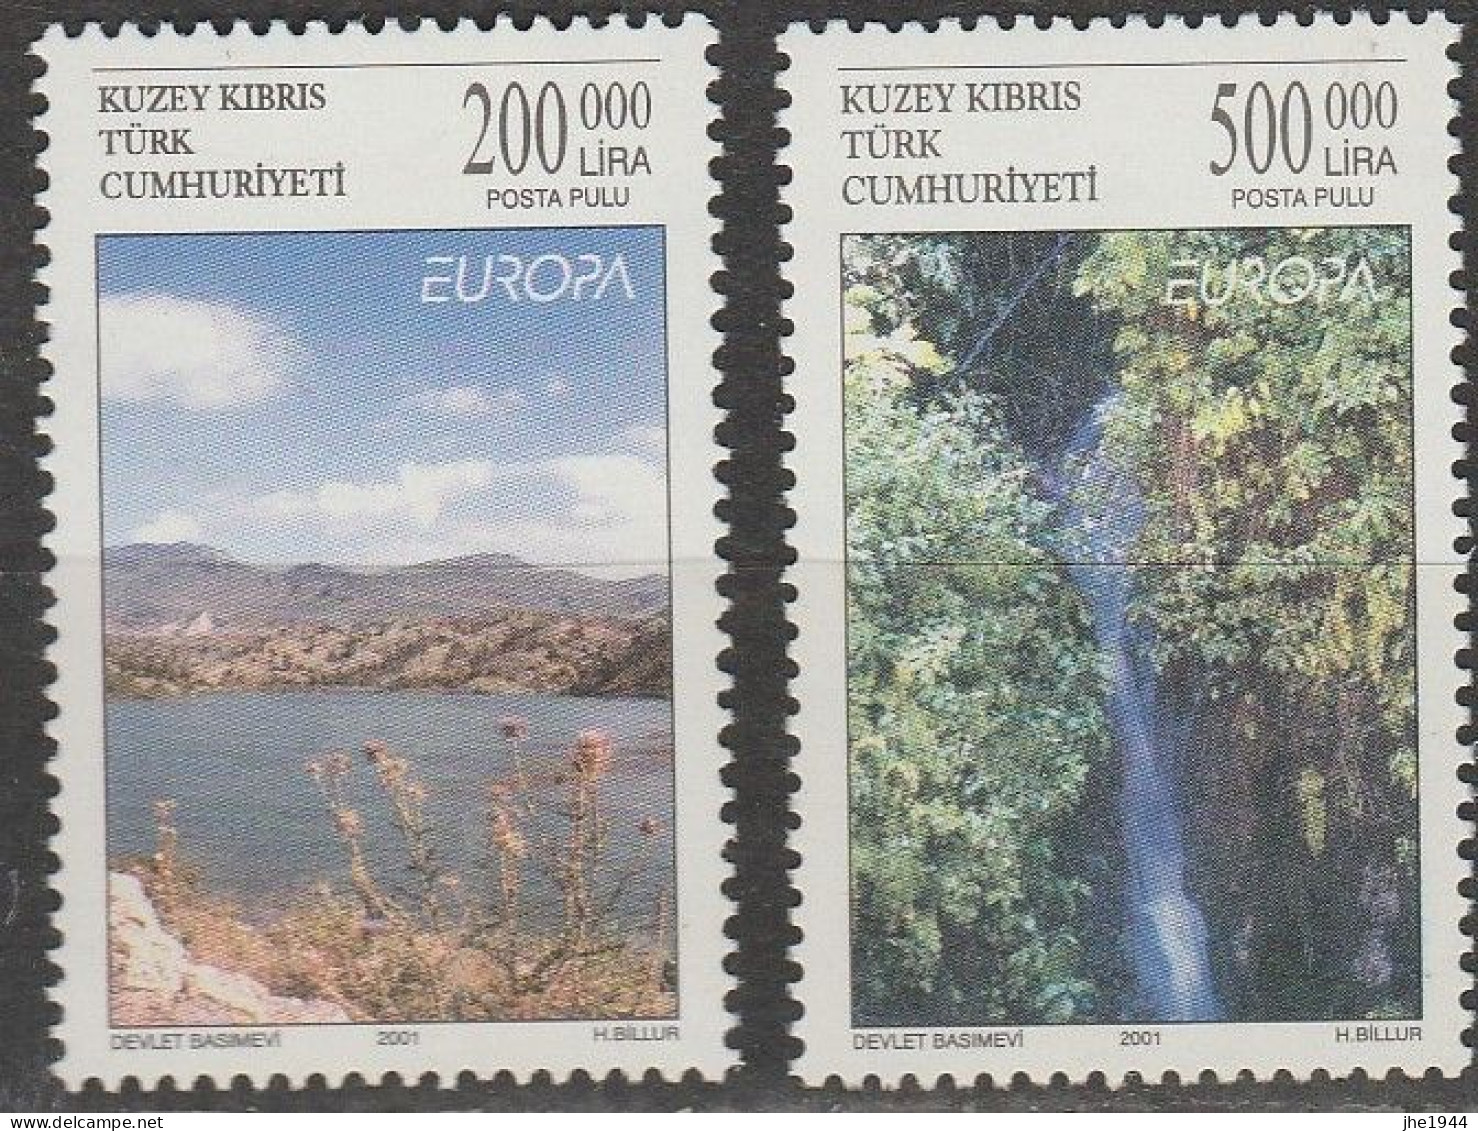 Europa 2001 L'eau, richesse naturelle Voir liste des timbres à vendre **